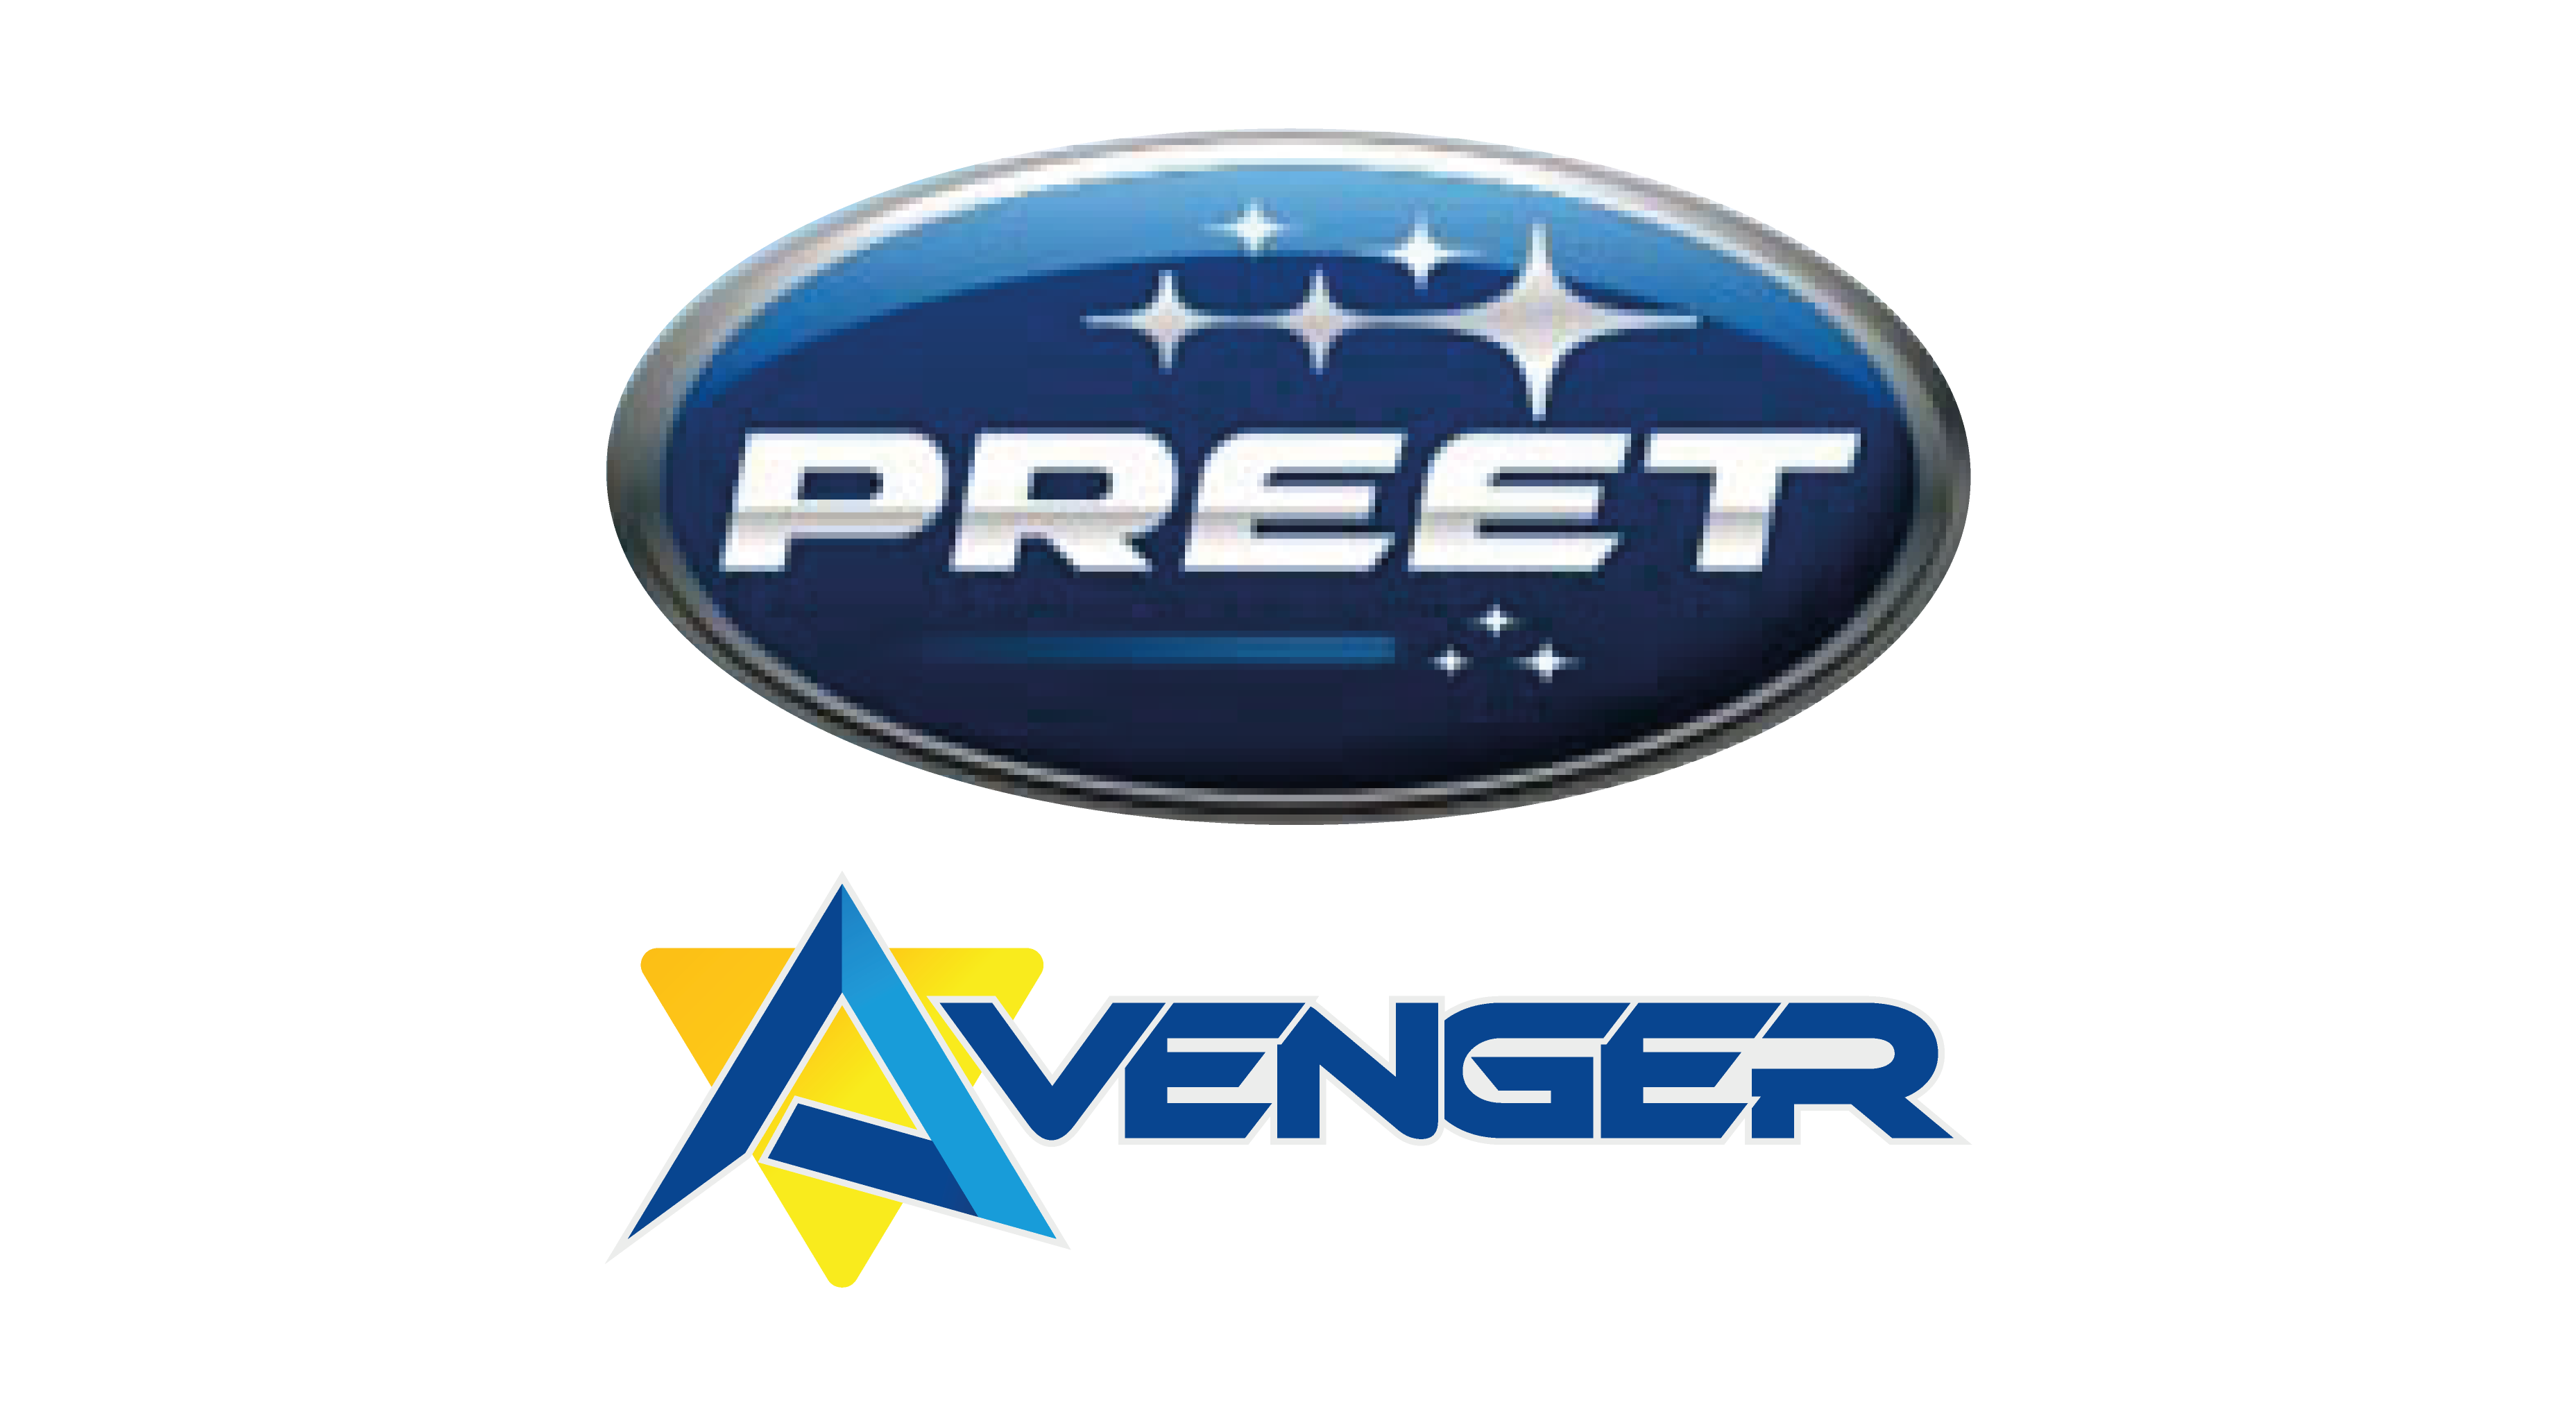 Avenger | Preet